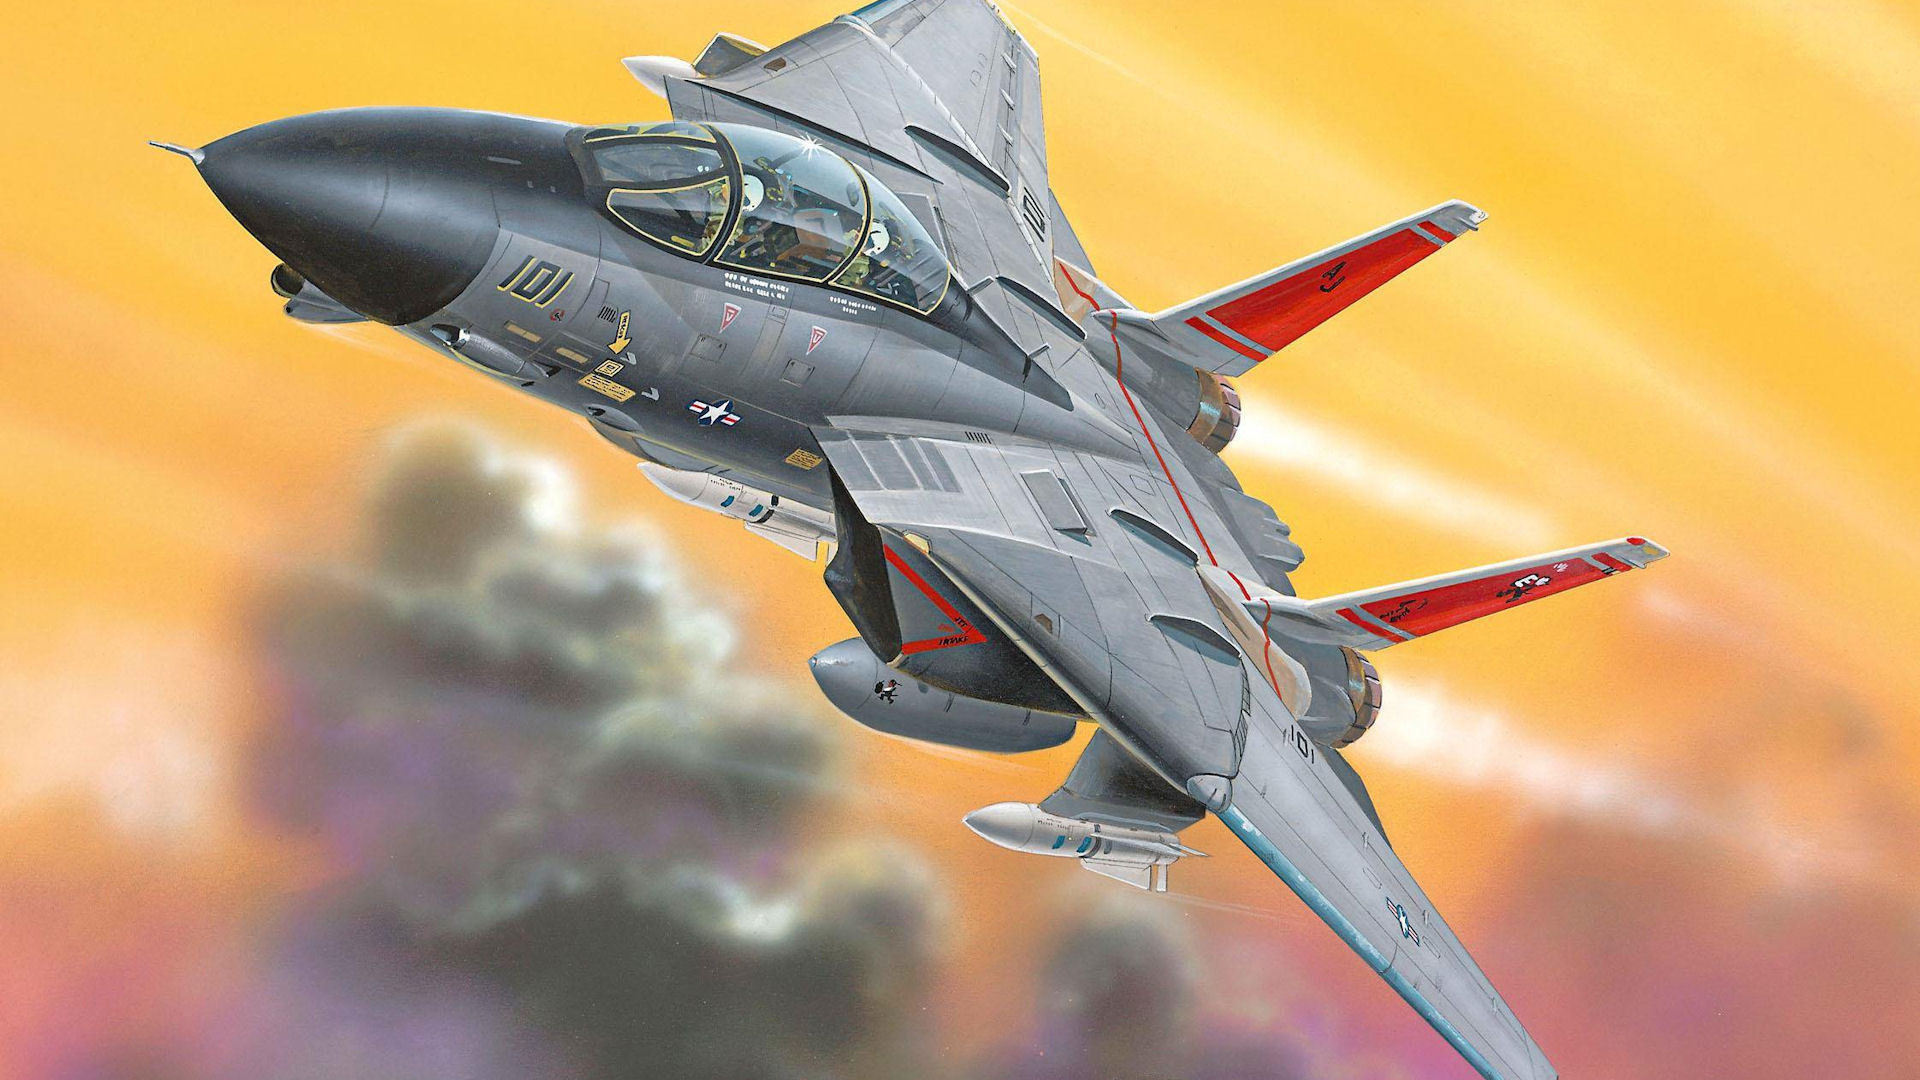 Download hd 1920x1080 Grumman F-14 Tomcat desktop wallpaper ID:365666 for free